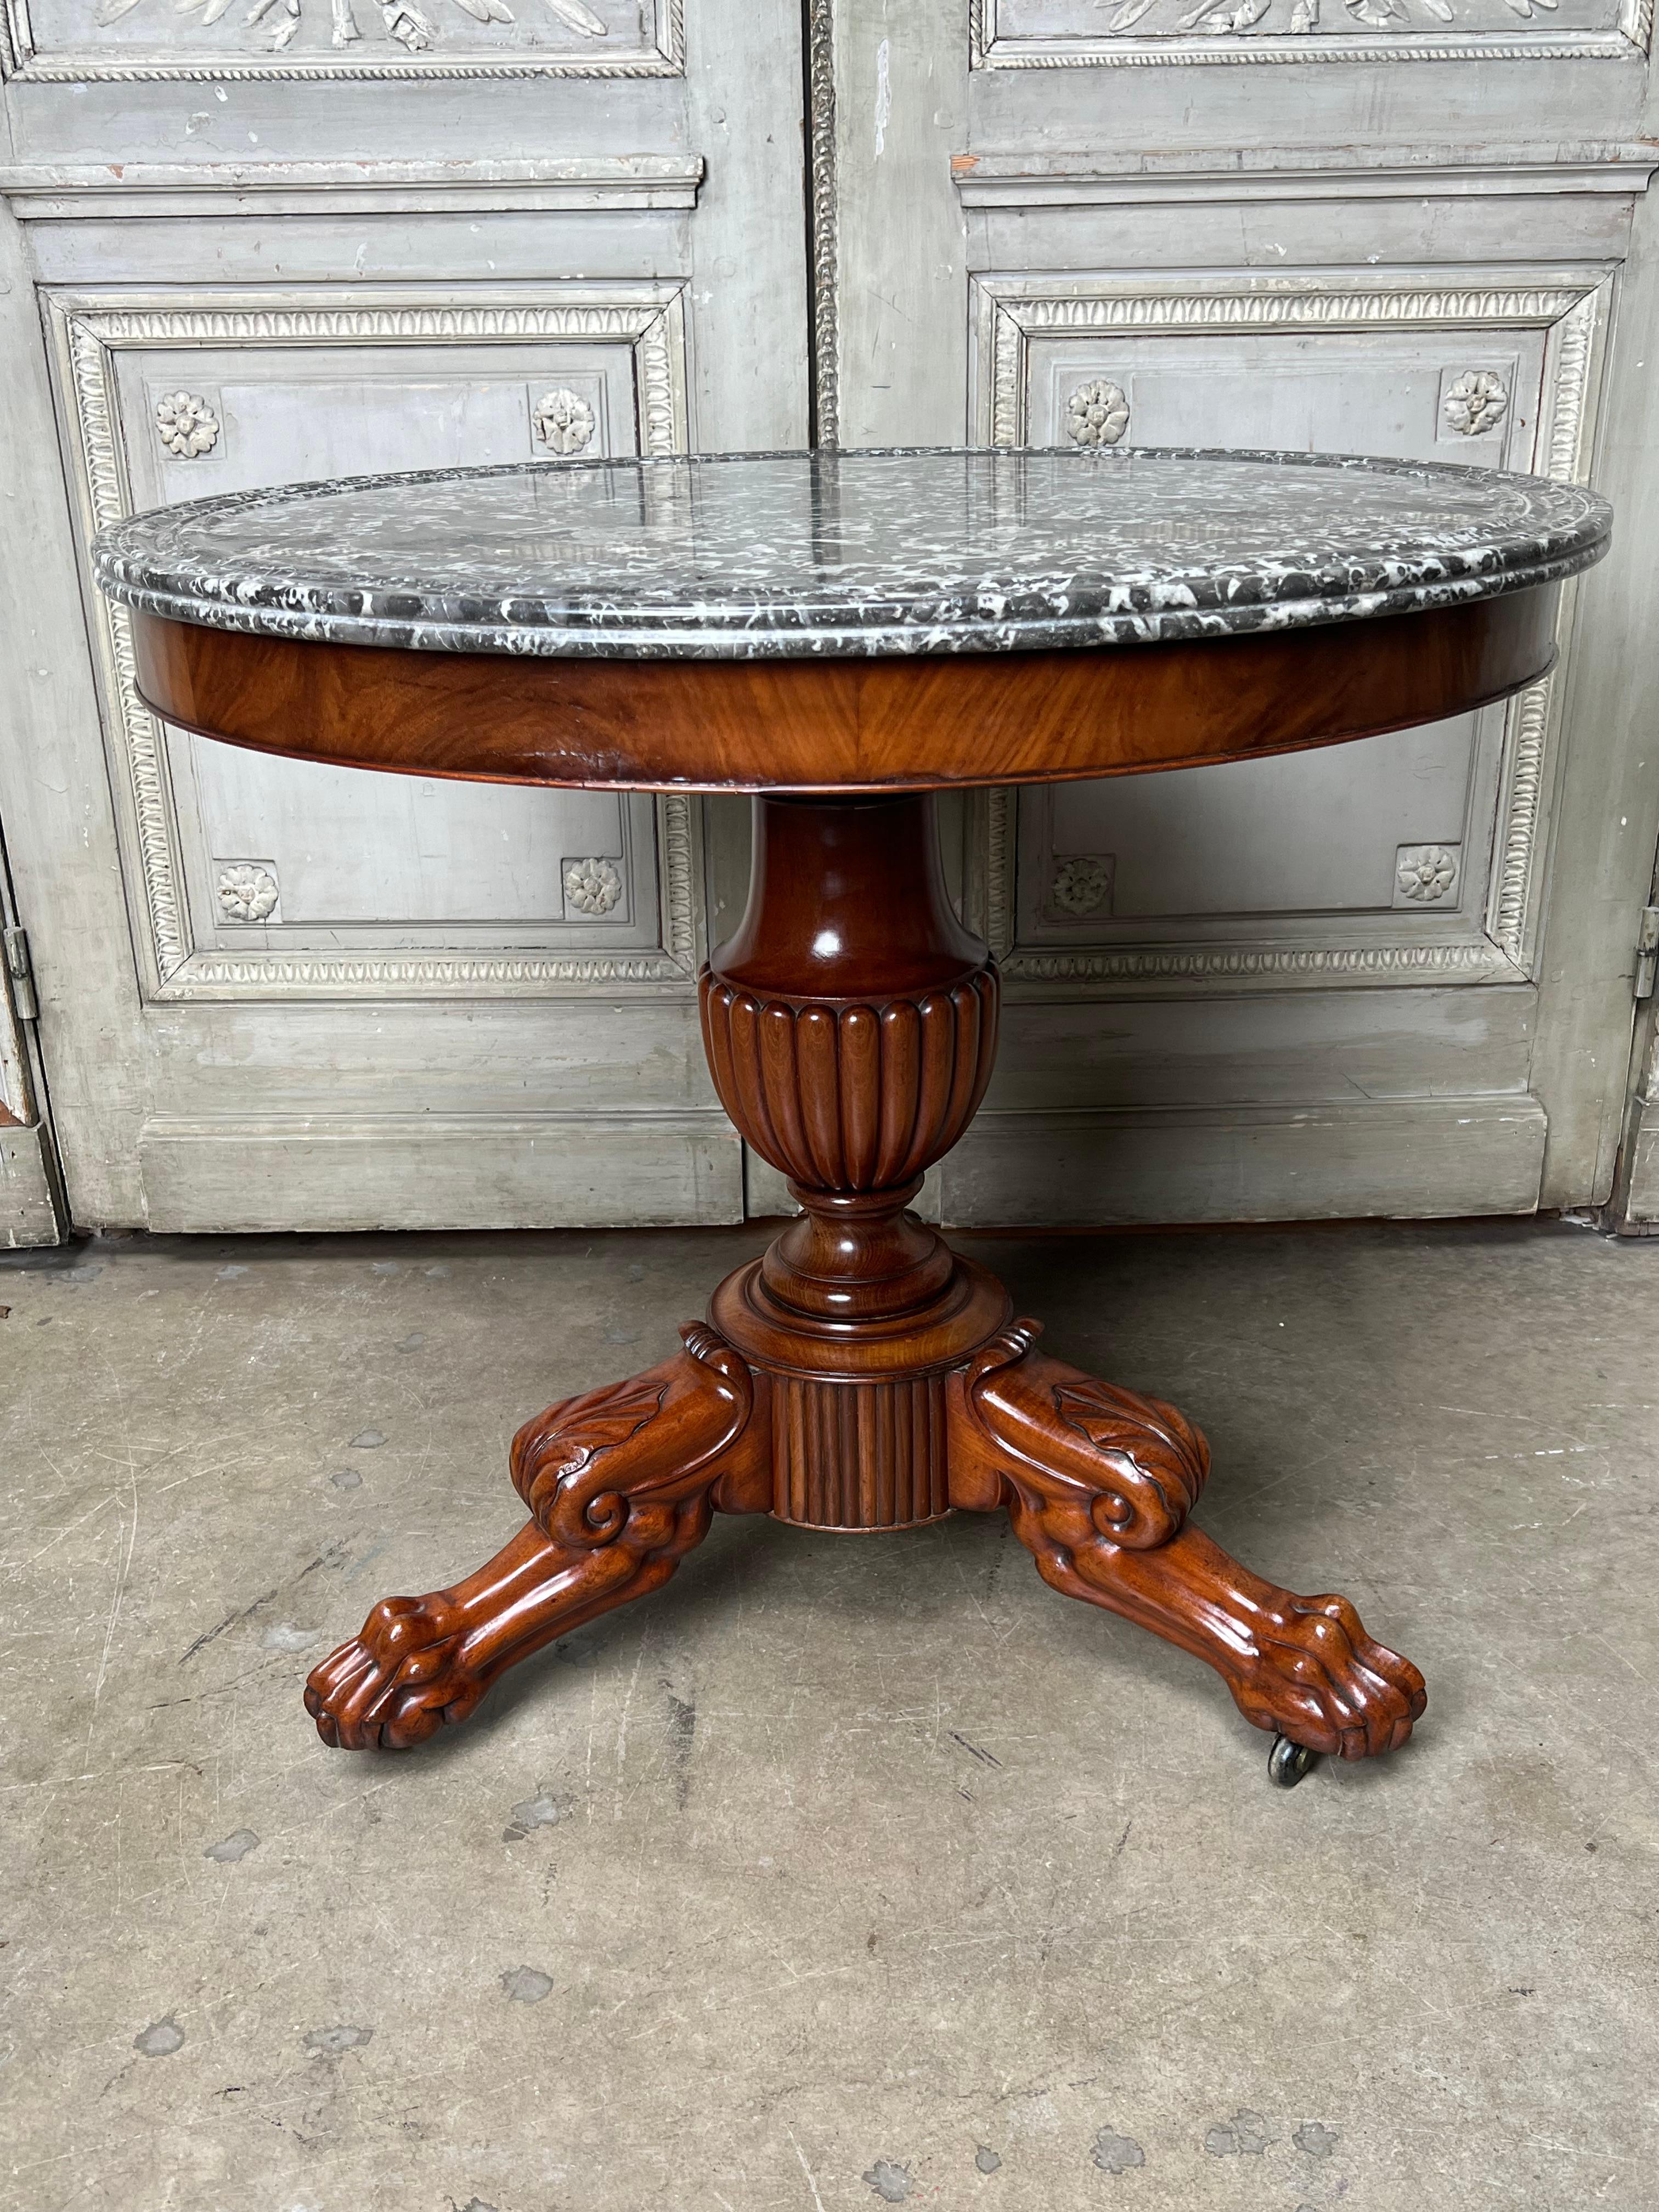 Ein französischer Gueridon-Tisch von Charles X. aus Mahagoni mit einer Marmorplatte.
Dieser schöne Tisch hat eine gute Größe und kann neben einem Sofa oder Bett oder zwischen zwei Stühlen verwendet werden.  Er hat eine großartige tiefe Schnitzerei